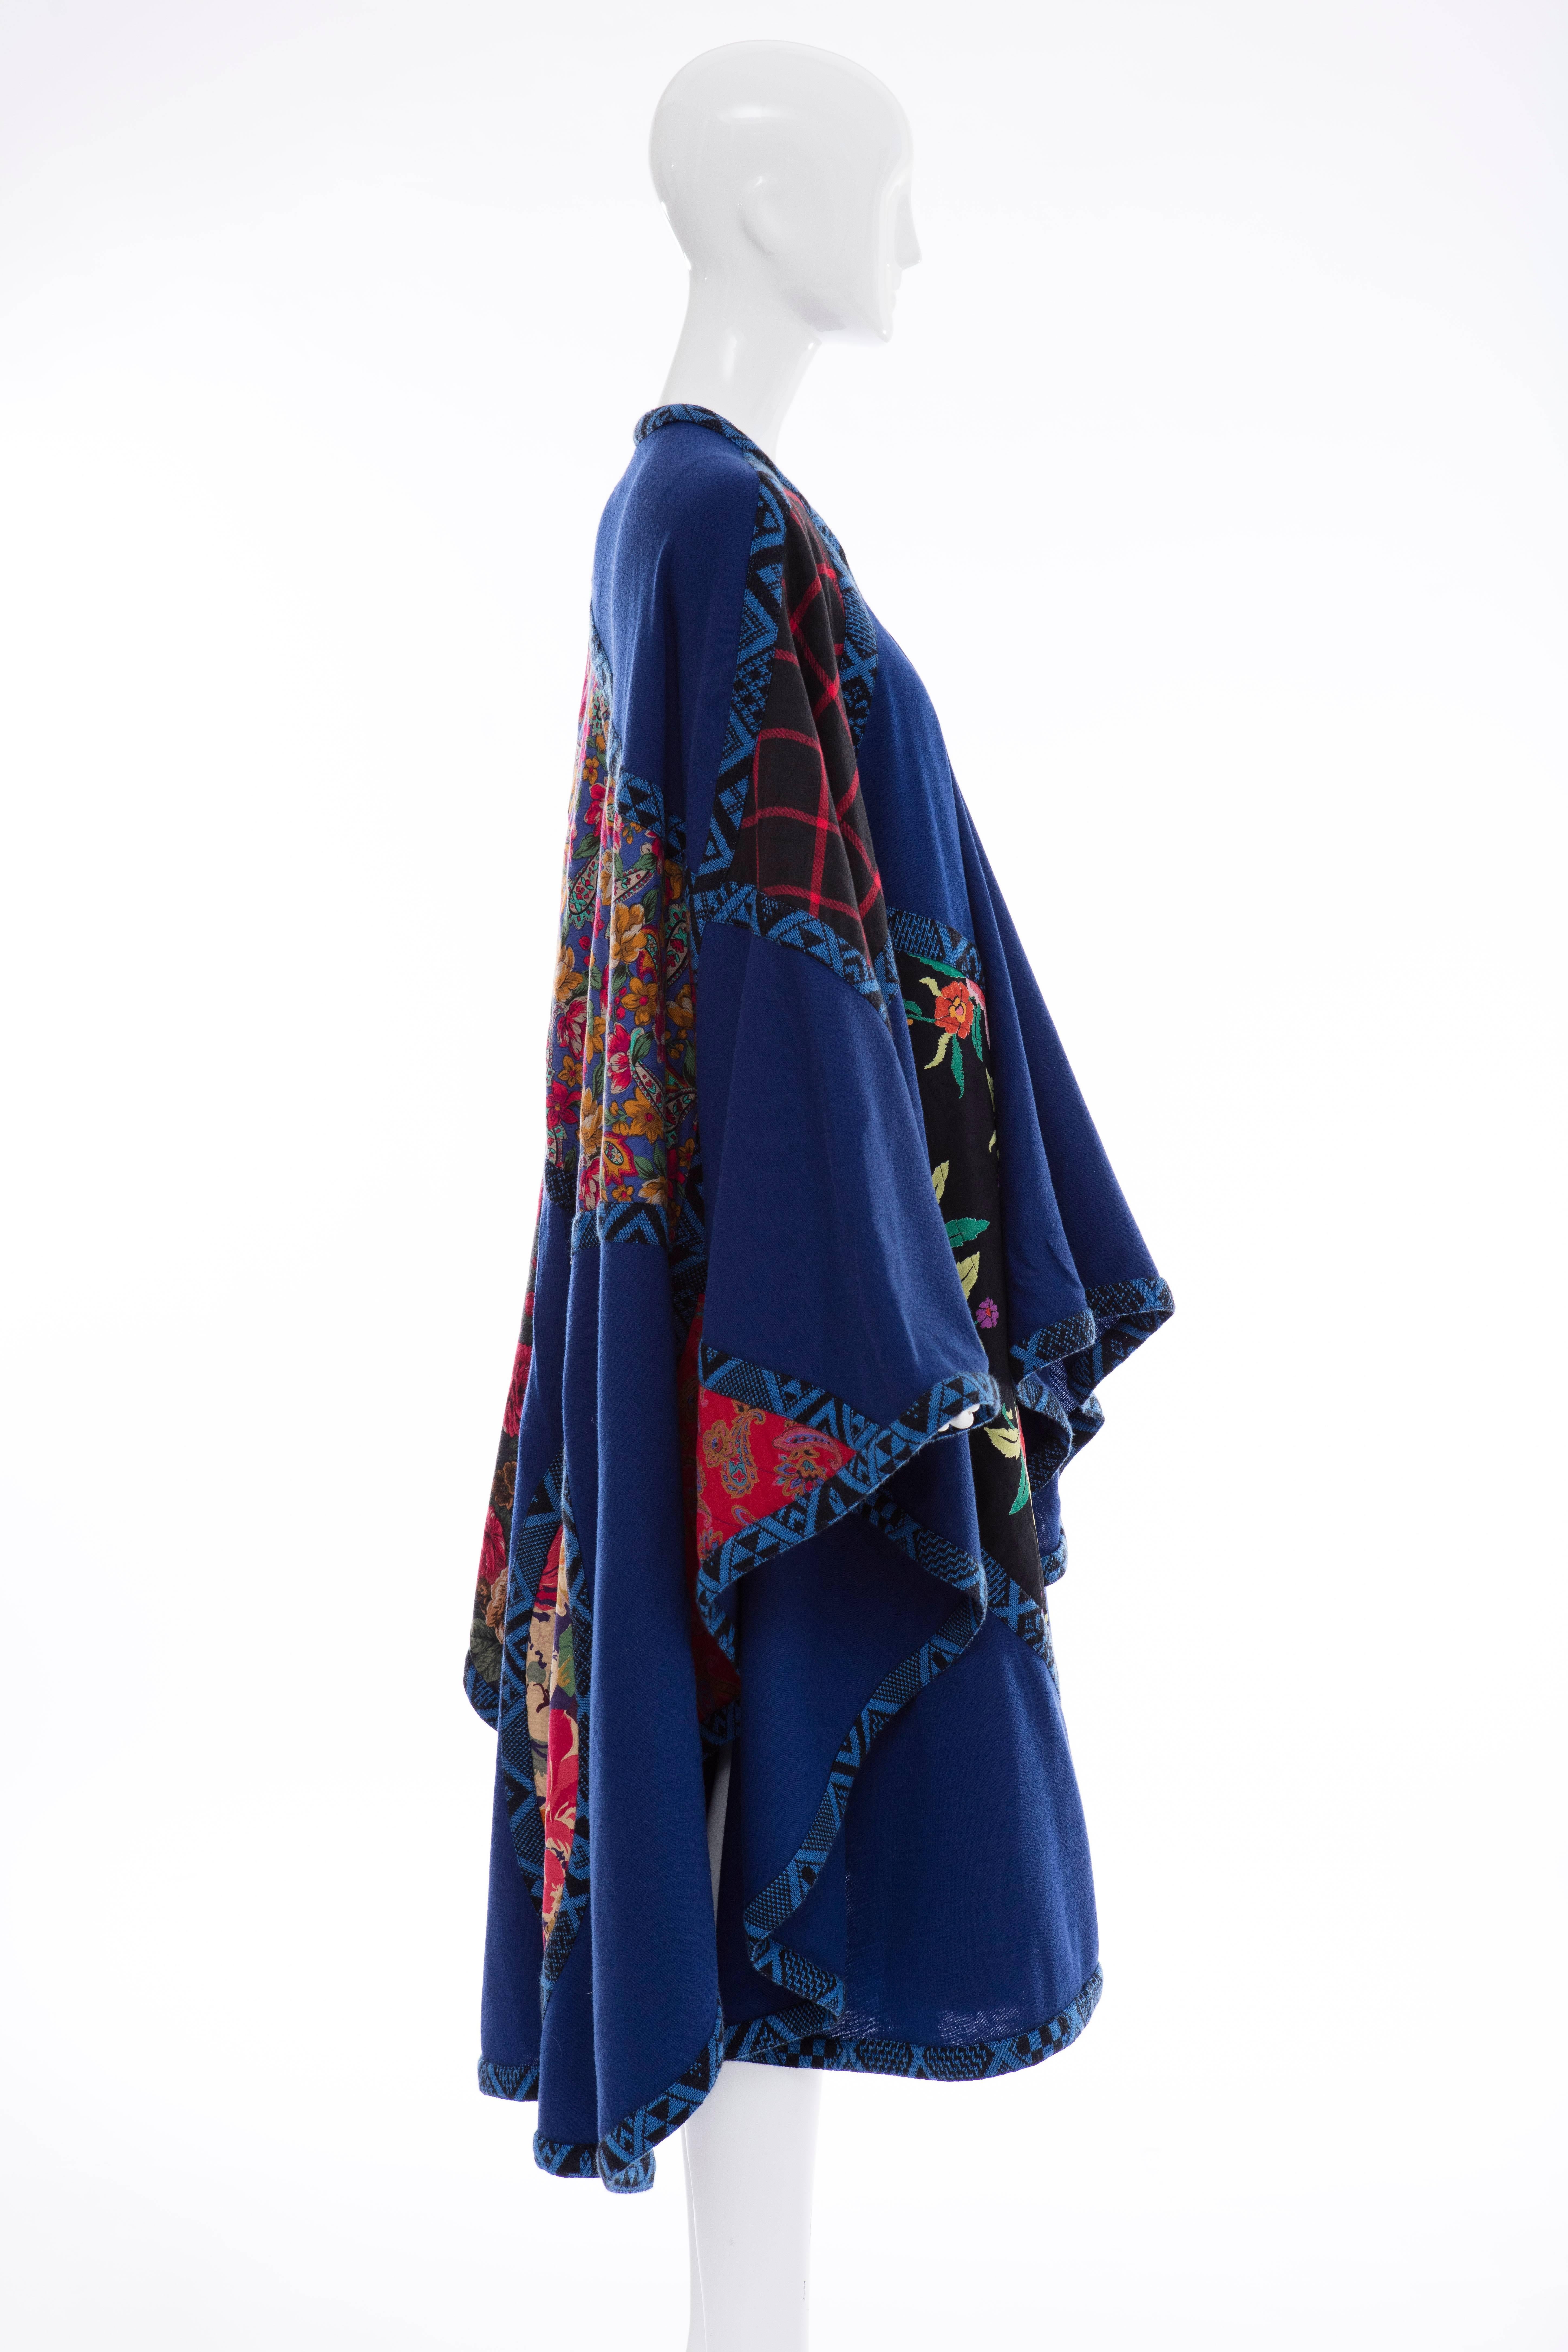 Black Koos Van Den Akker Royal Blue Cloak With Floral Quilted Patchwork, Circa 1980's